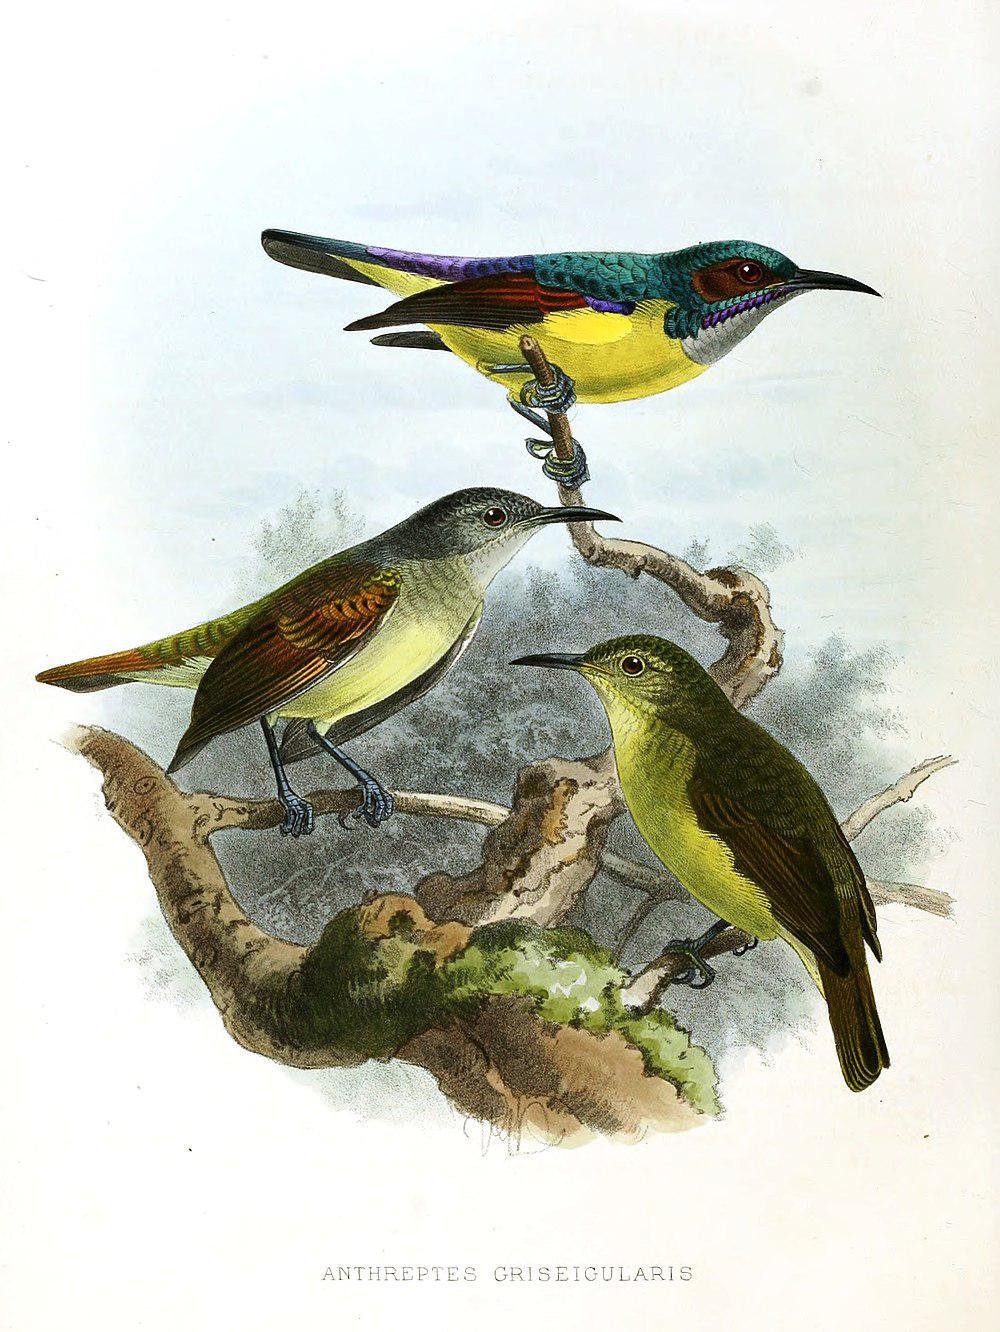 灰喉食蜜鸟 / Grey-throated Sunbird / Anthreptes griseigularis